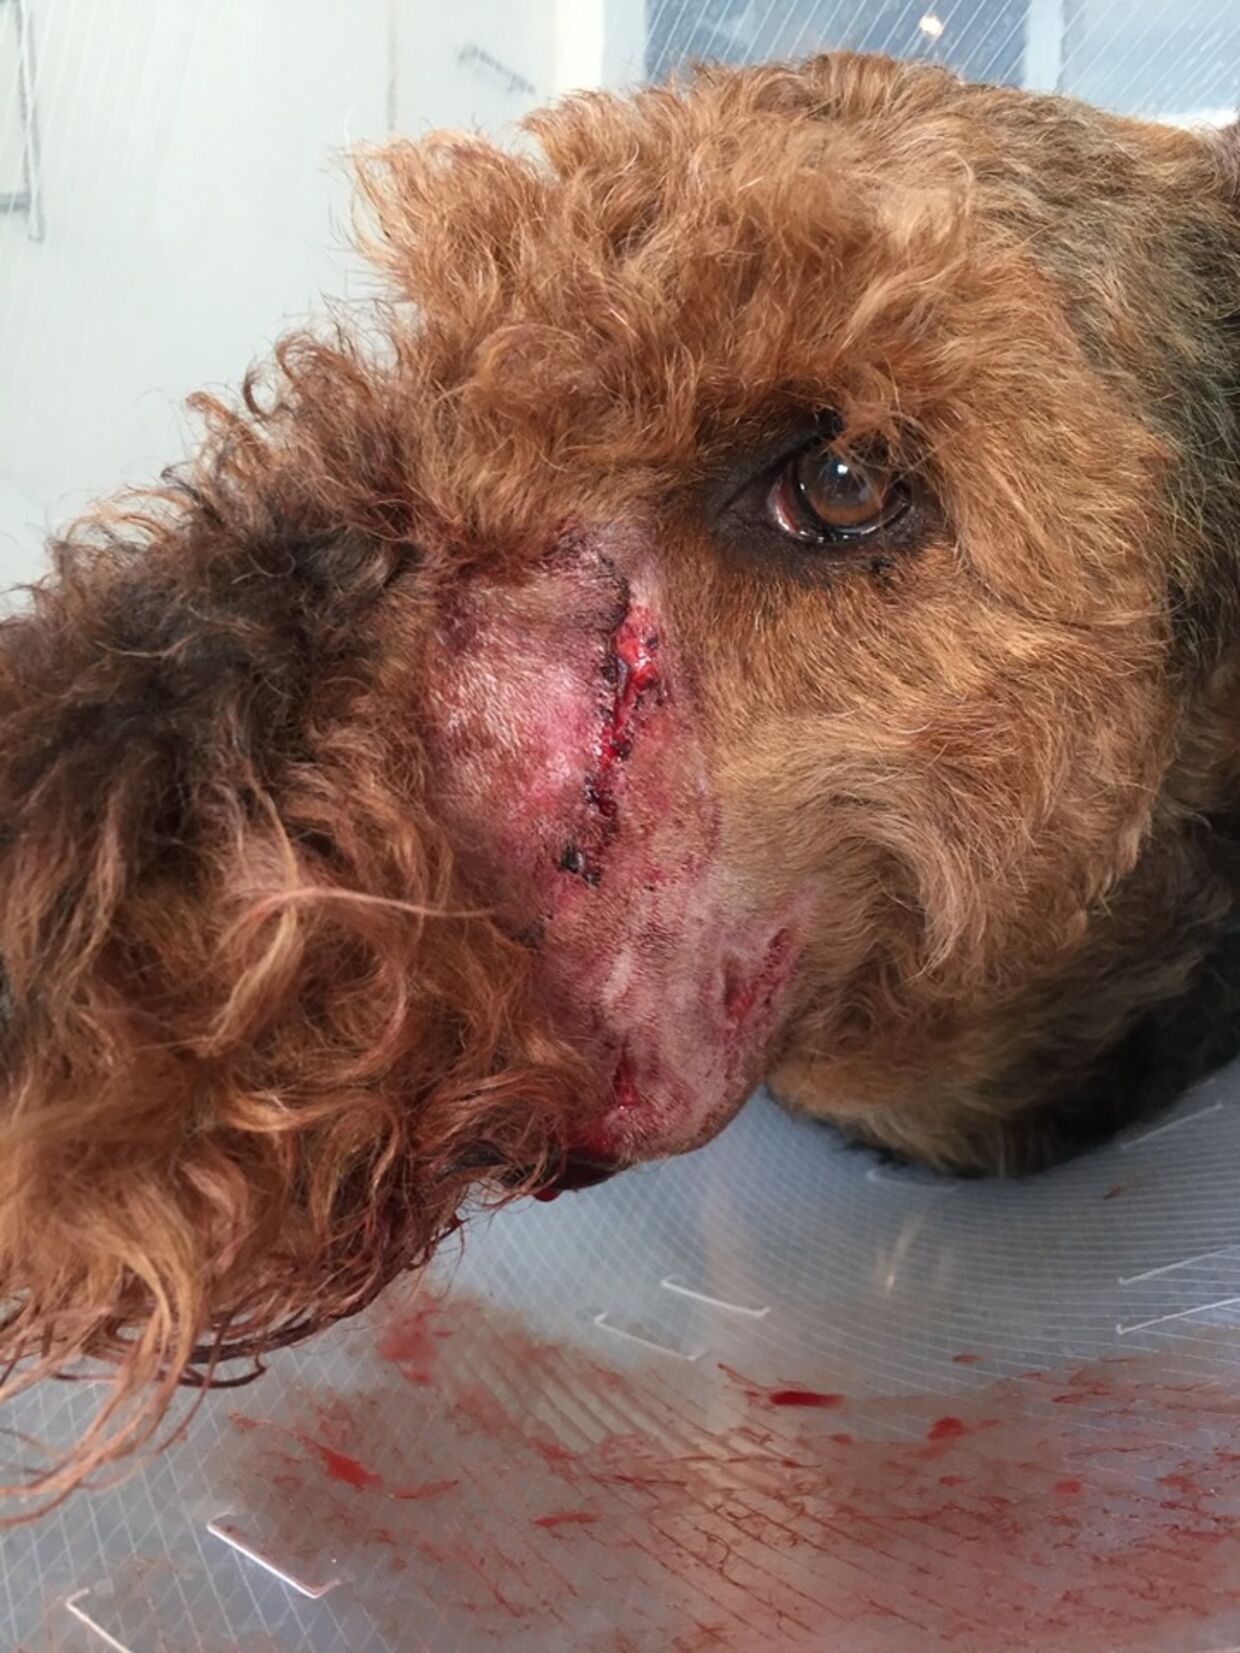 Her er hunden Tox, der blev bidt af en anden hund. 